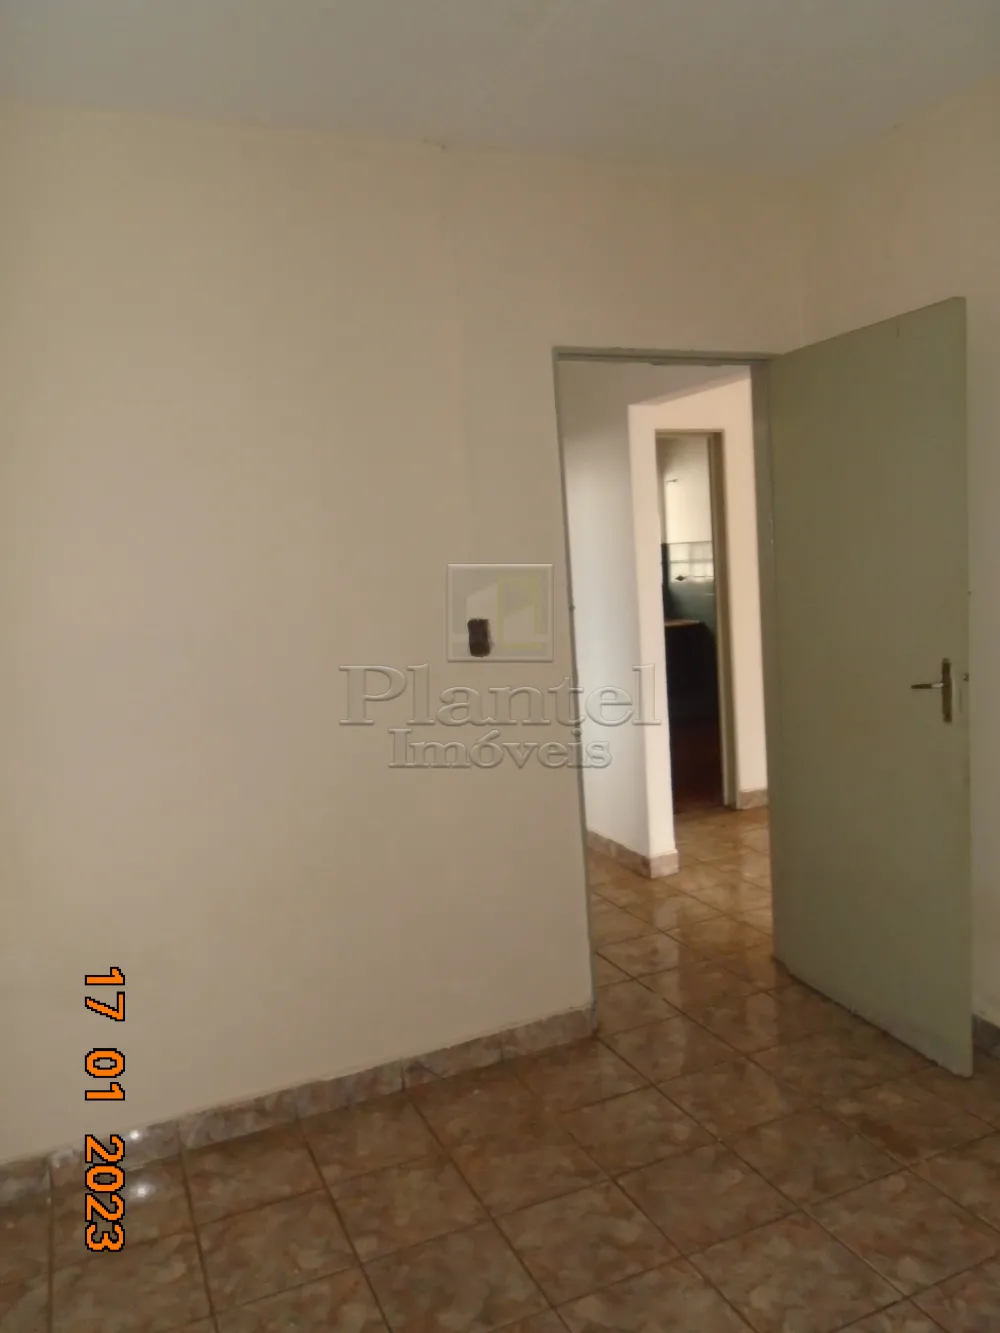 Imobiliária Ribeirão Preto - Plantel Imóveis - Casa - Ipiranga - Ribeirão Preto